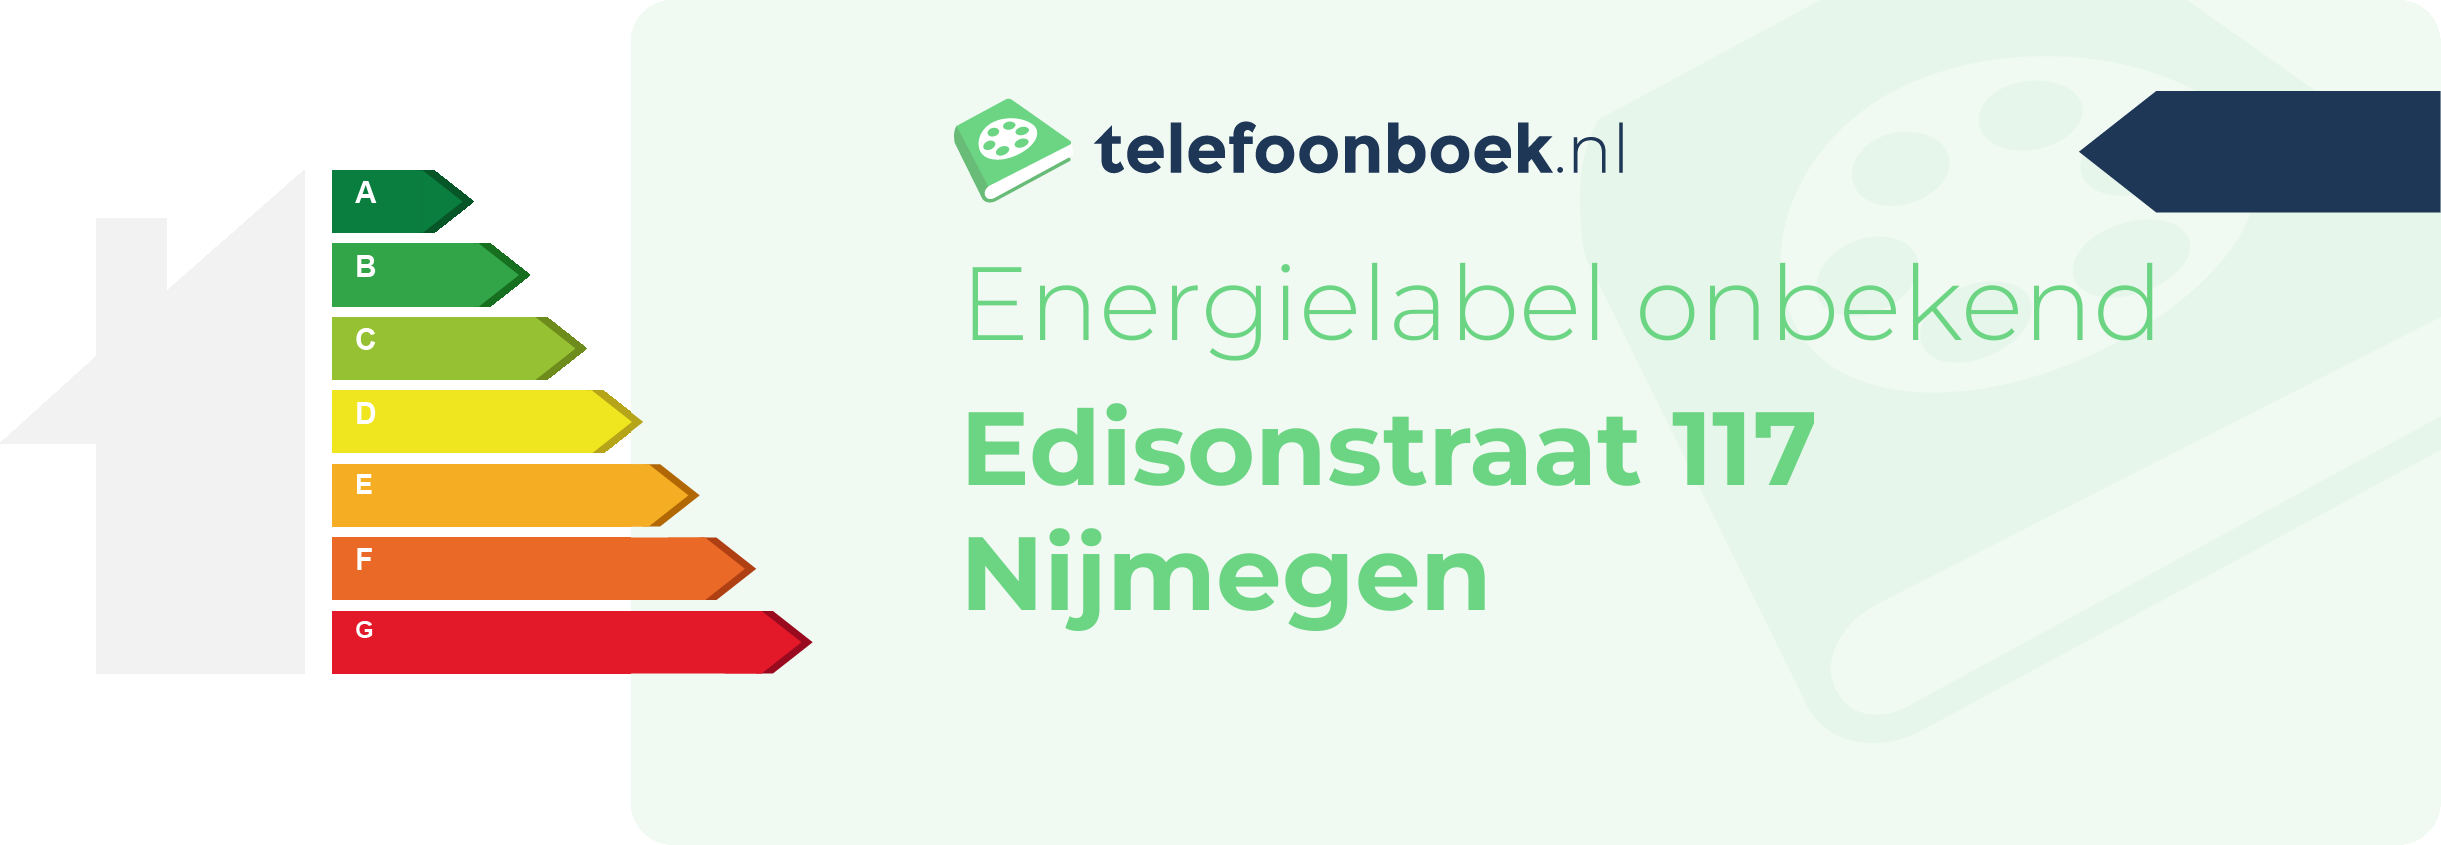 Energielabel Edisonstraat 117 Nijmegen